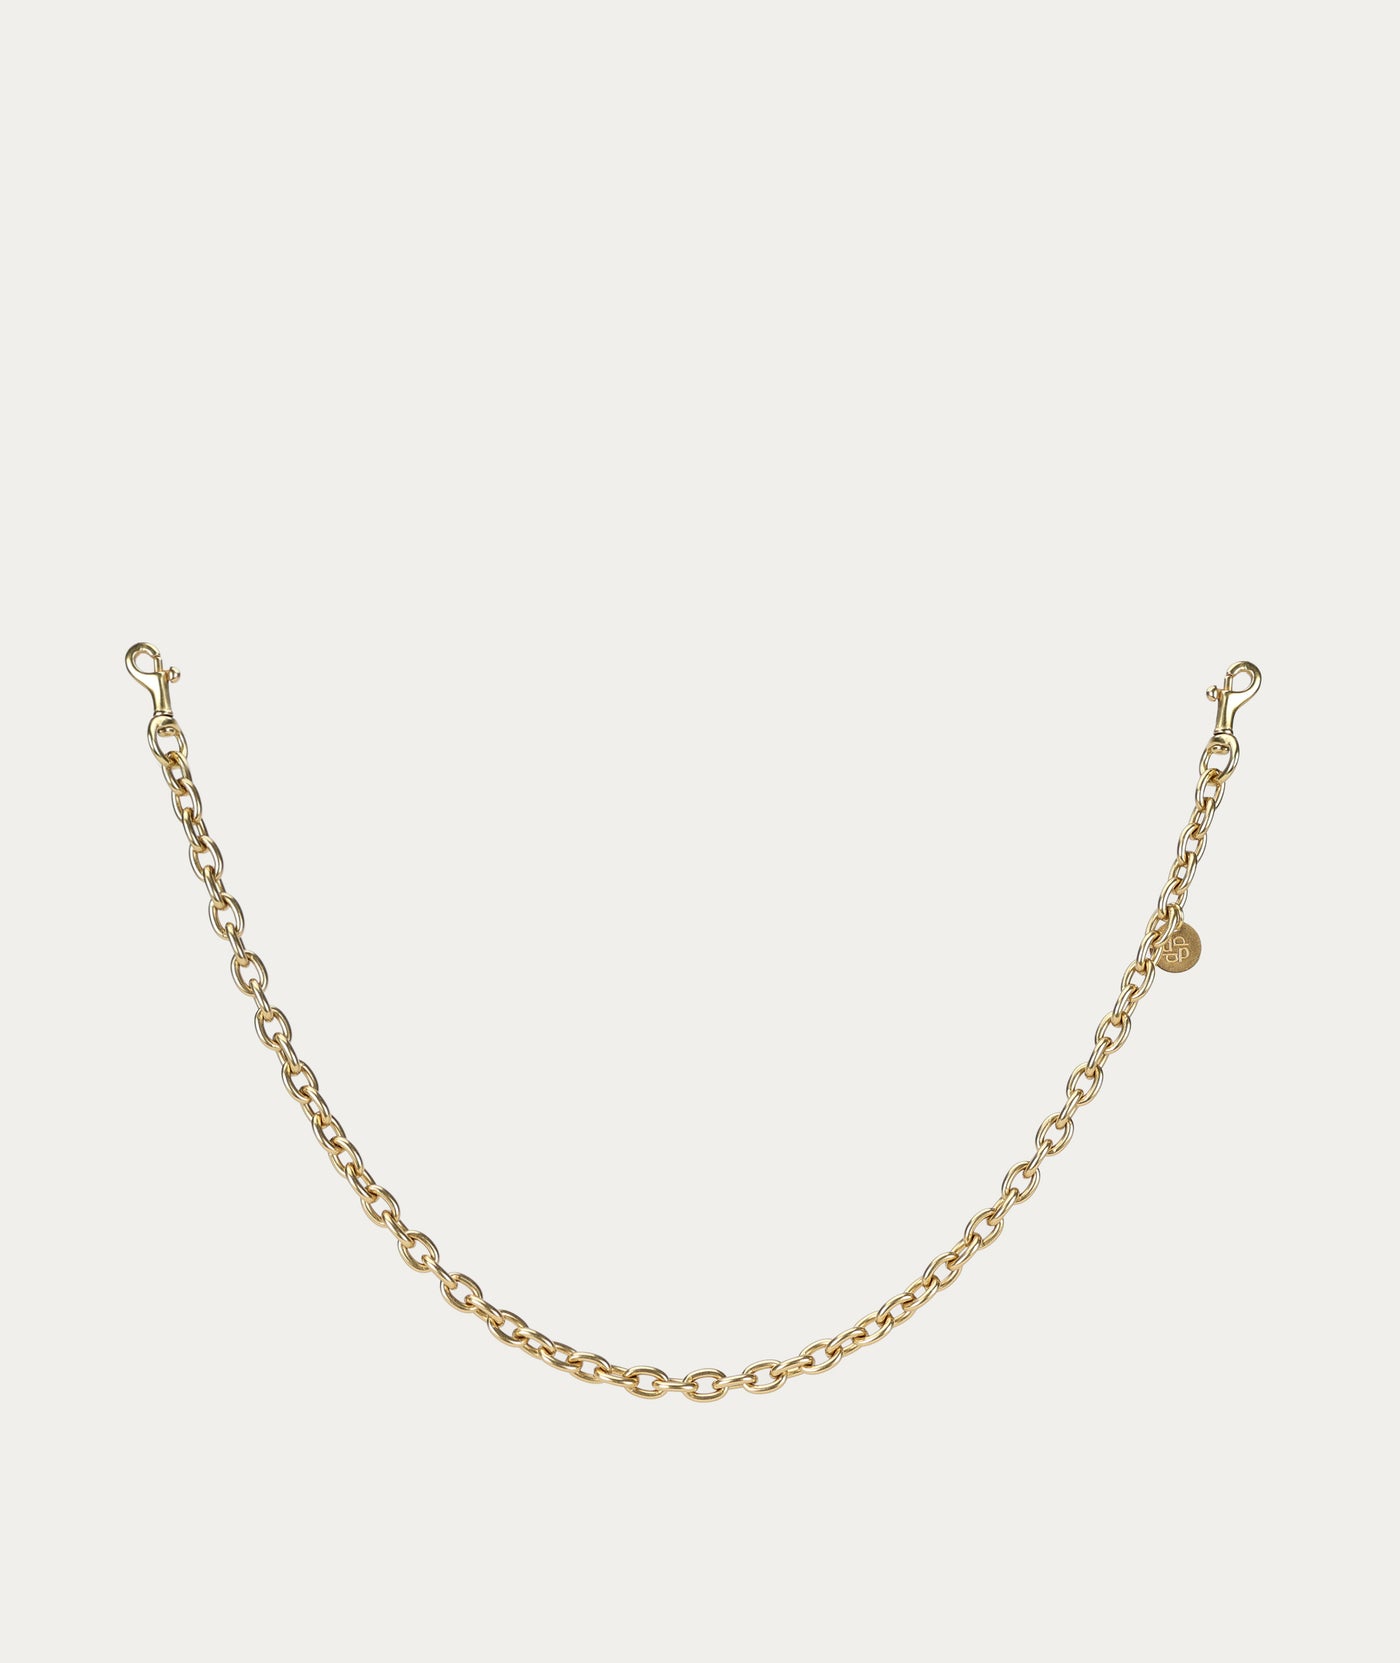 54cm Chain Strap - Brass